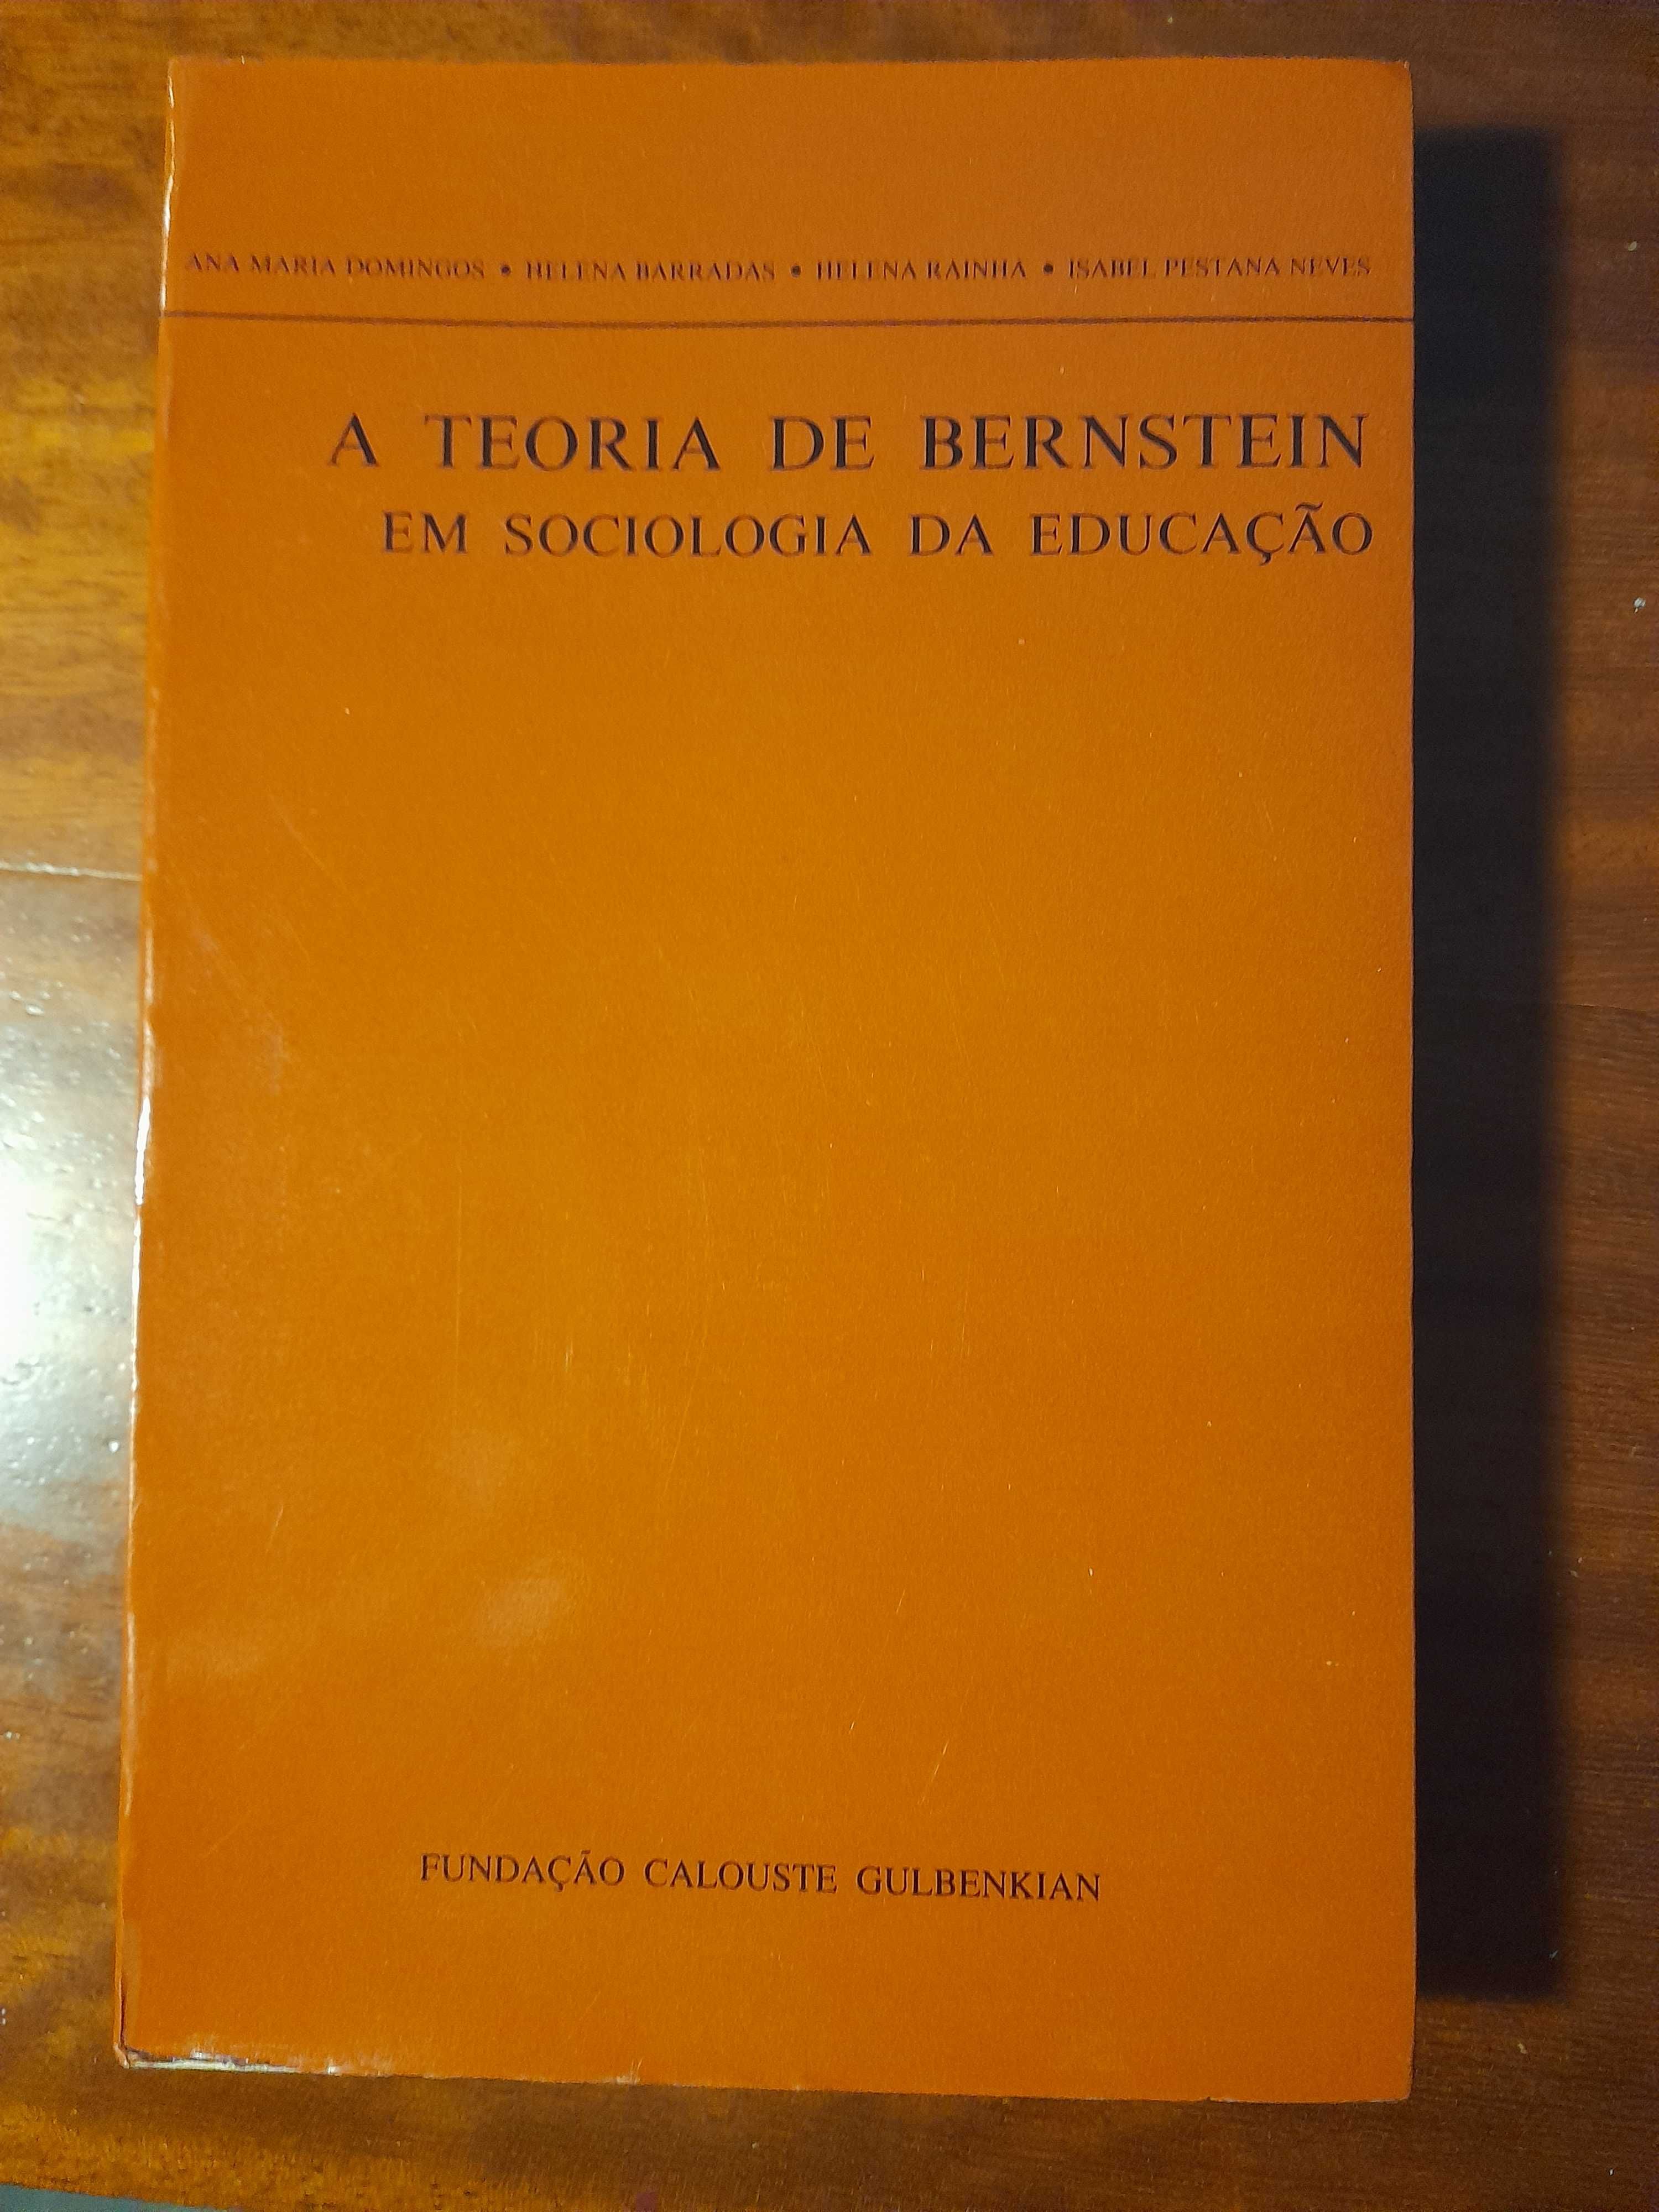 A Teoria de Bernstein em Sociologia da Educaçao